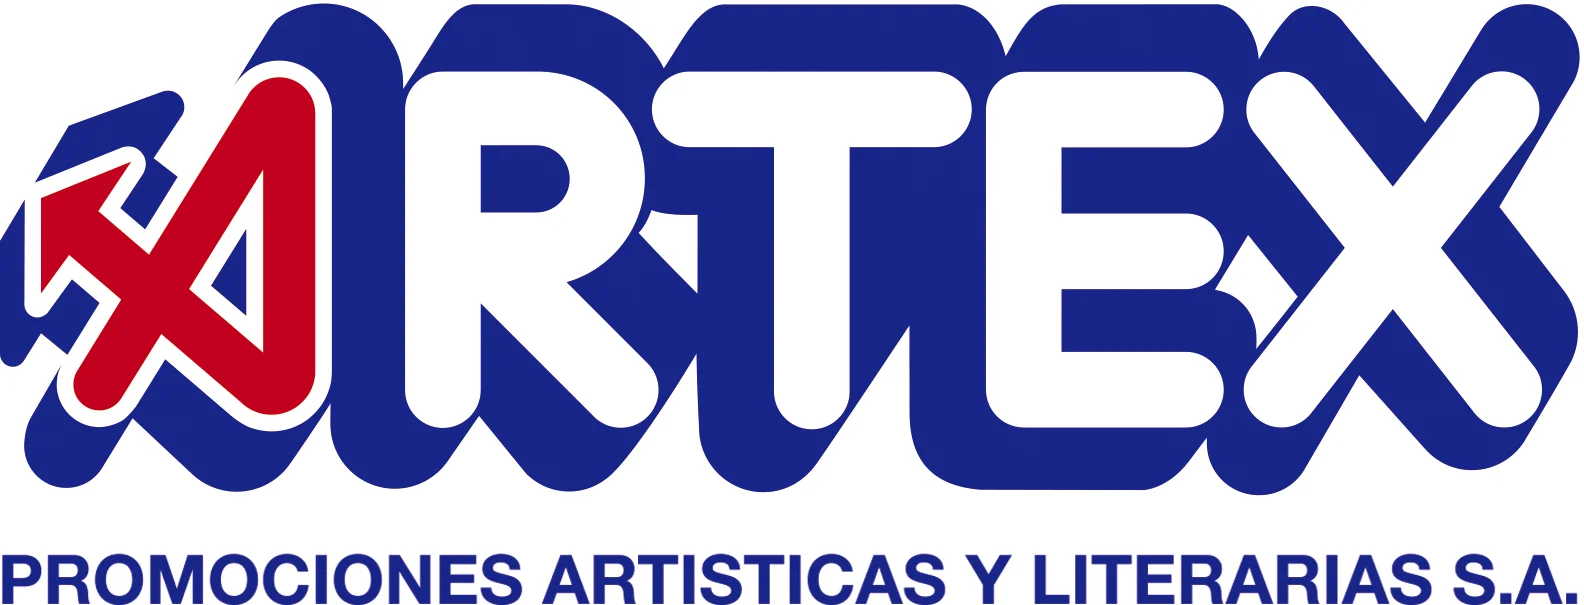 Logotipo (Original) Agencia de Representaciones y Promociónes Artísticas y Literarias (ARTEX), Cuba